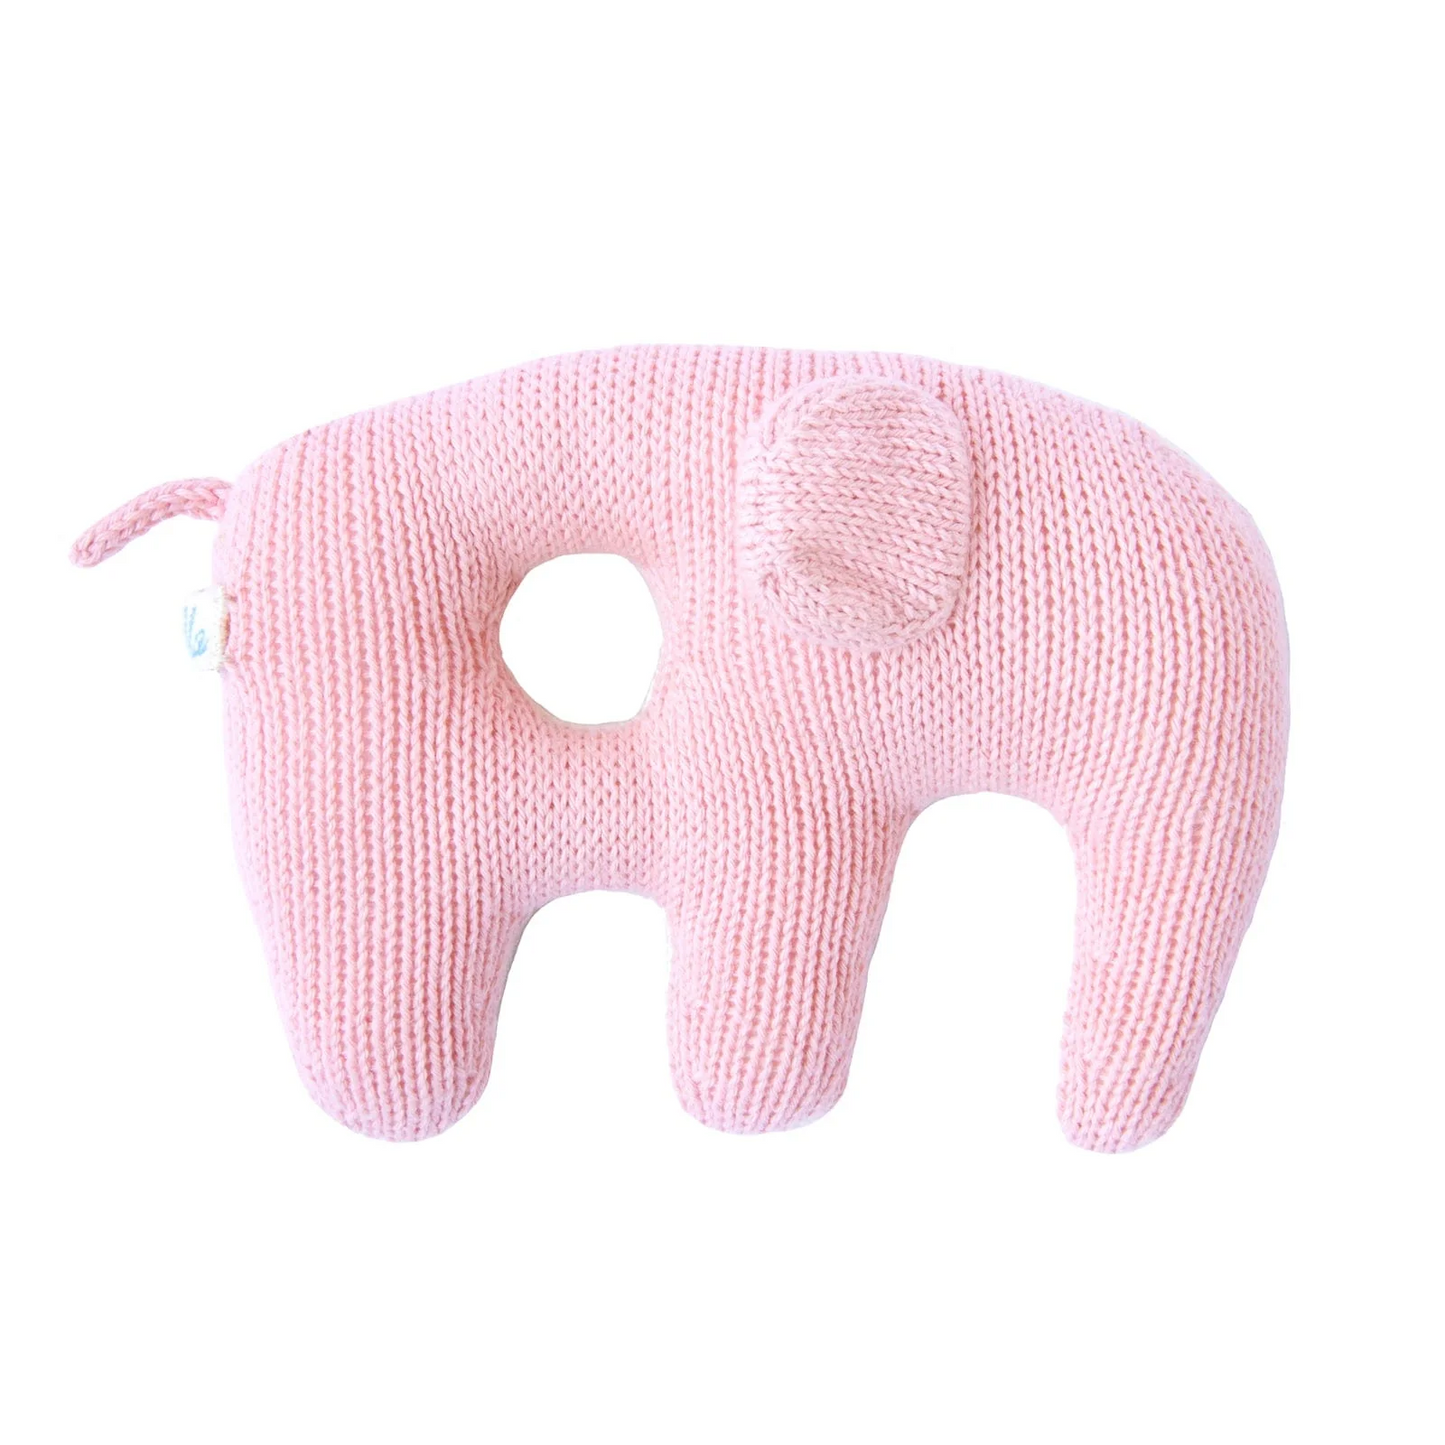 Blabla Jumbo Elephant Rattle Pink